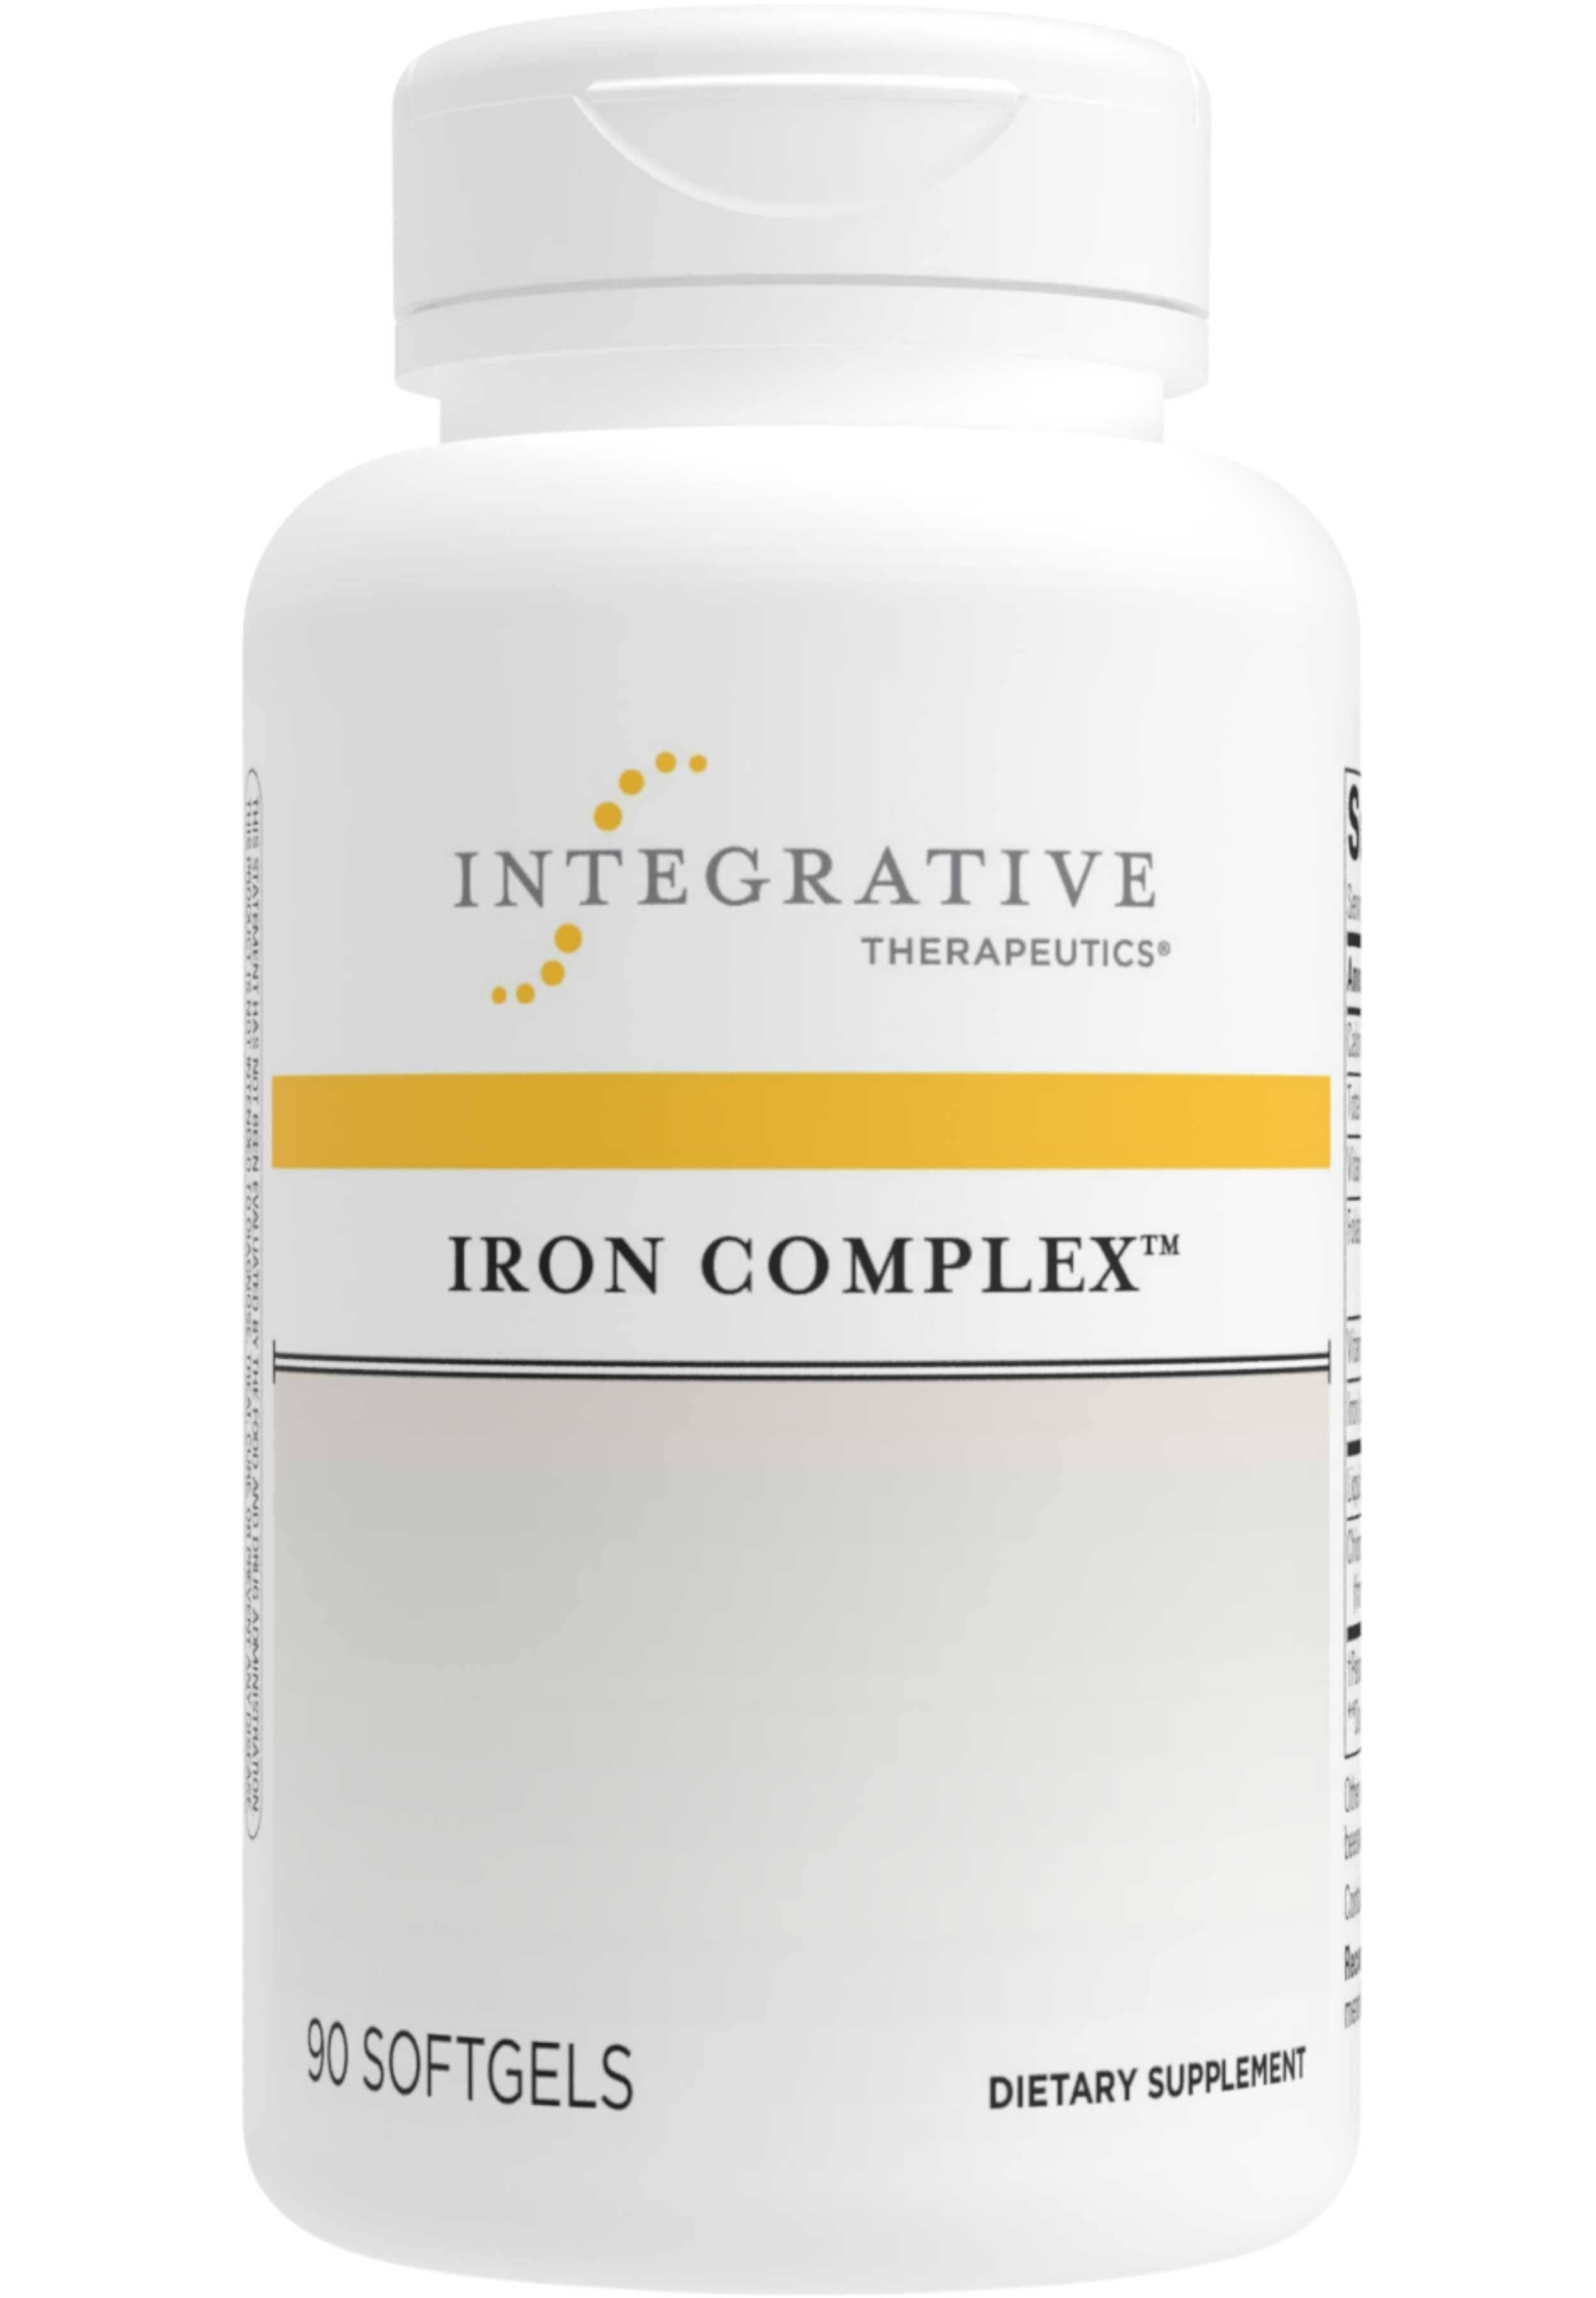 Integrative Therapeutics Iron Complex Supplement - 50mg, 90 Softgels